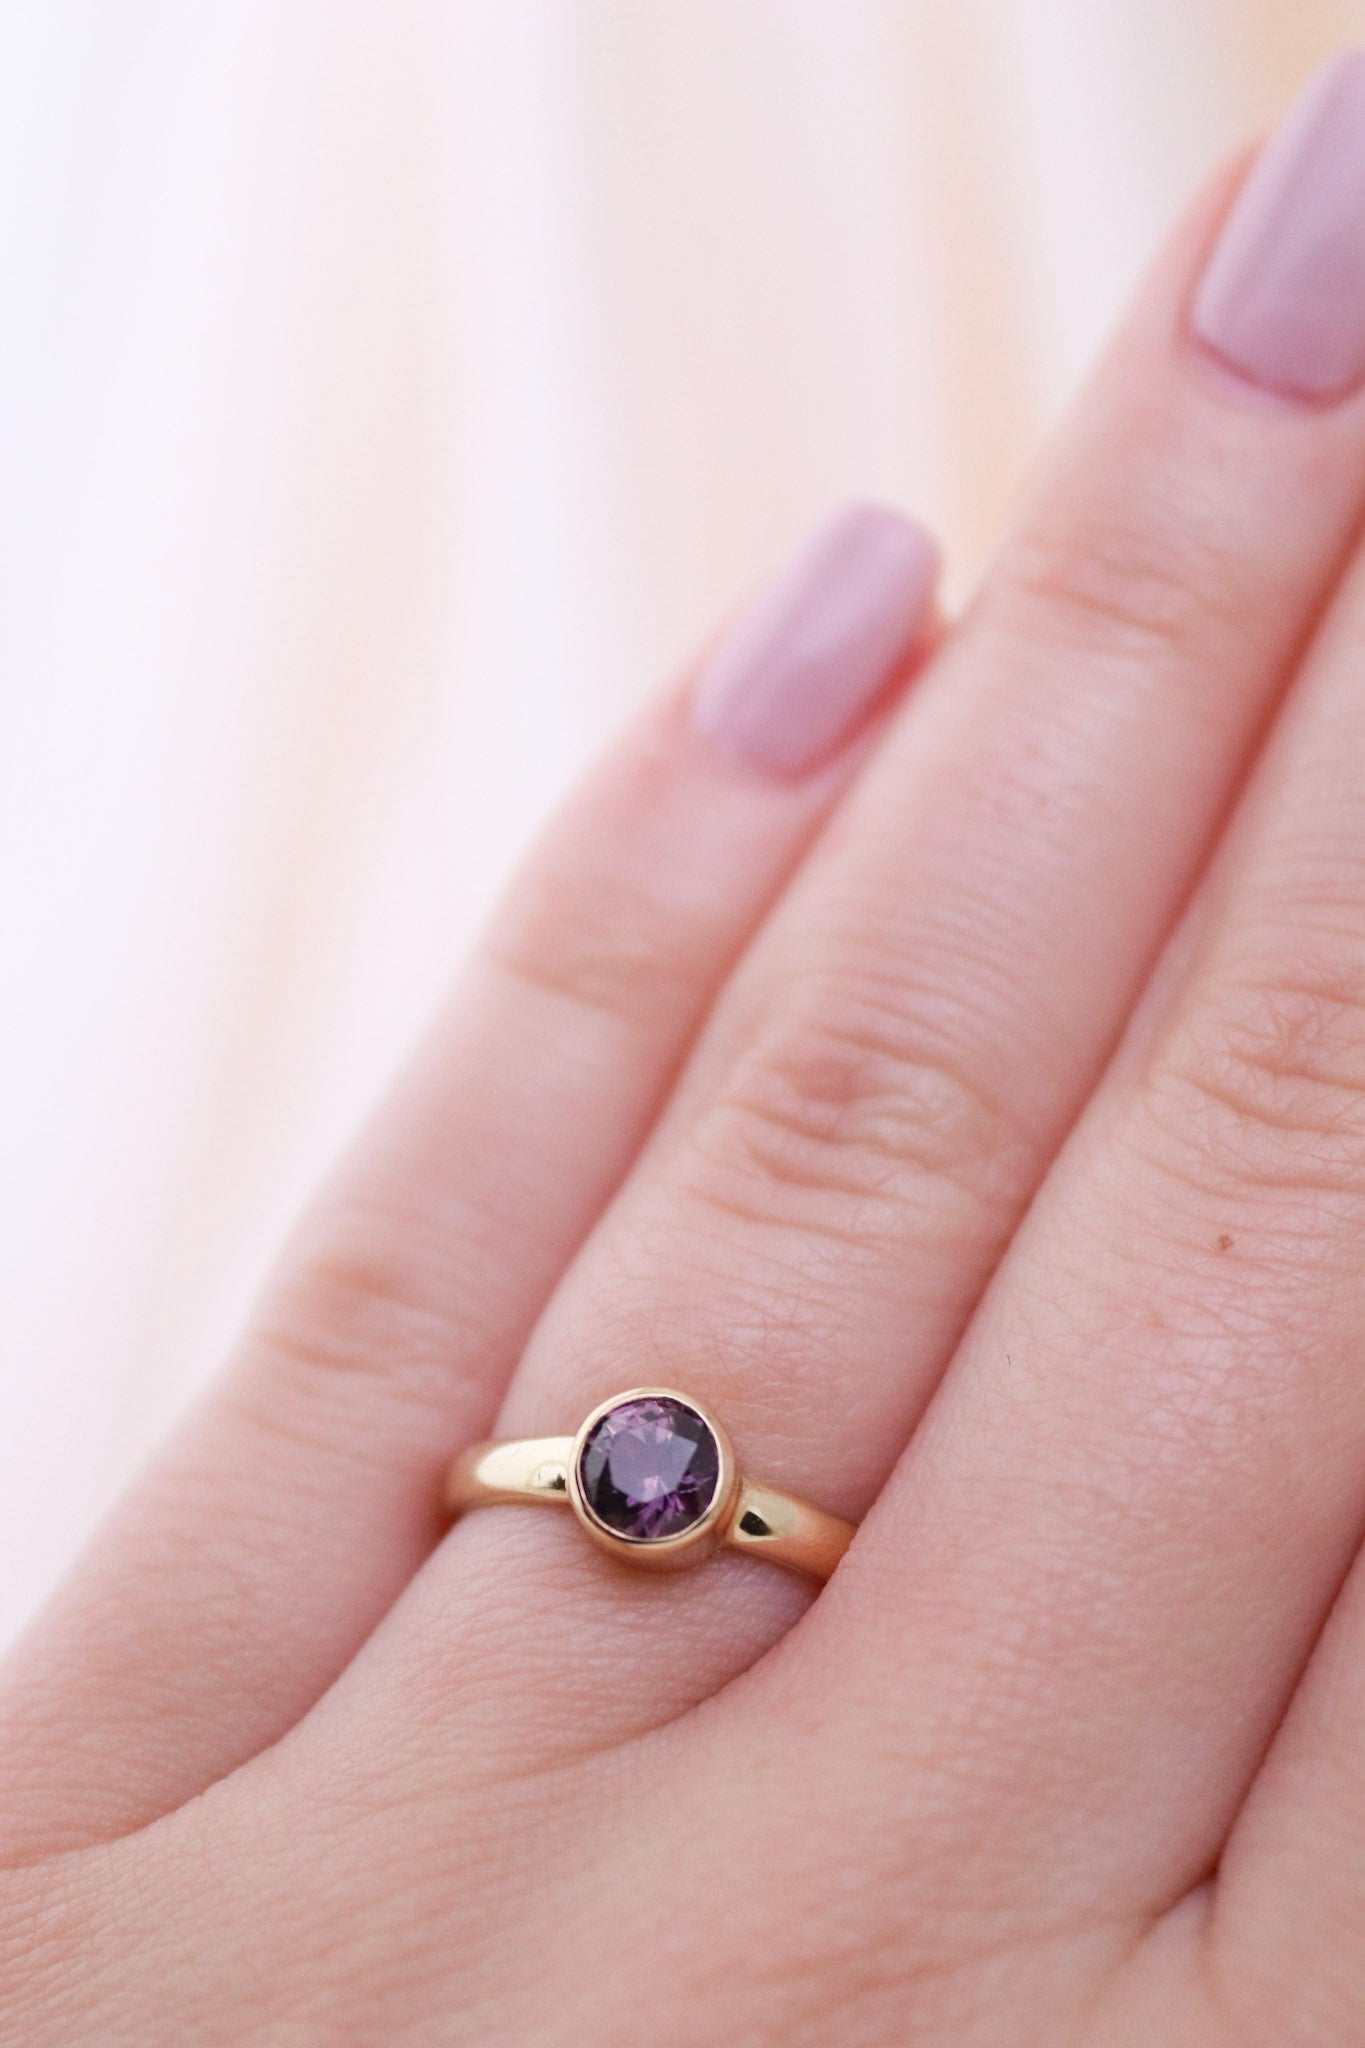 14K Gold Purple Sapphire Ring - Kingdom Jewelry